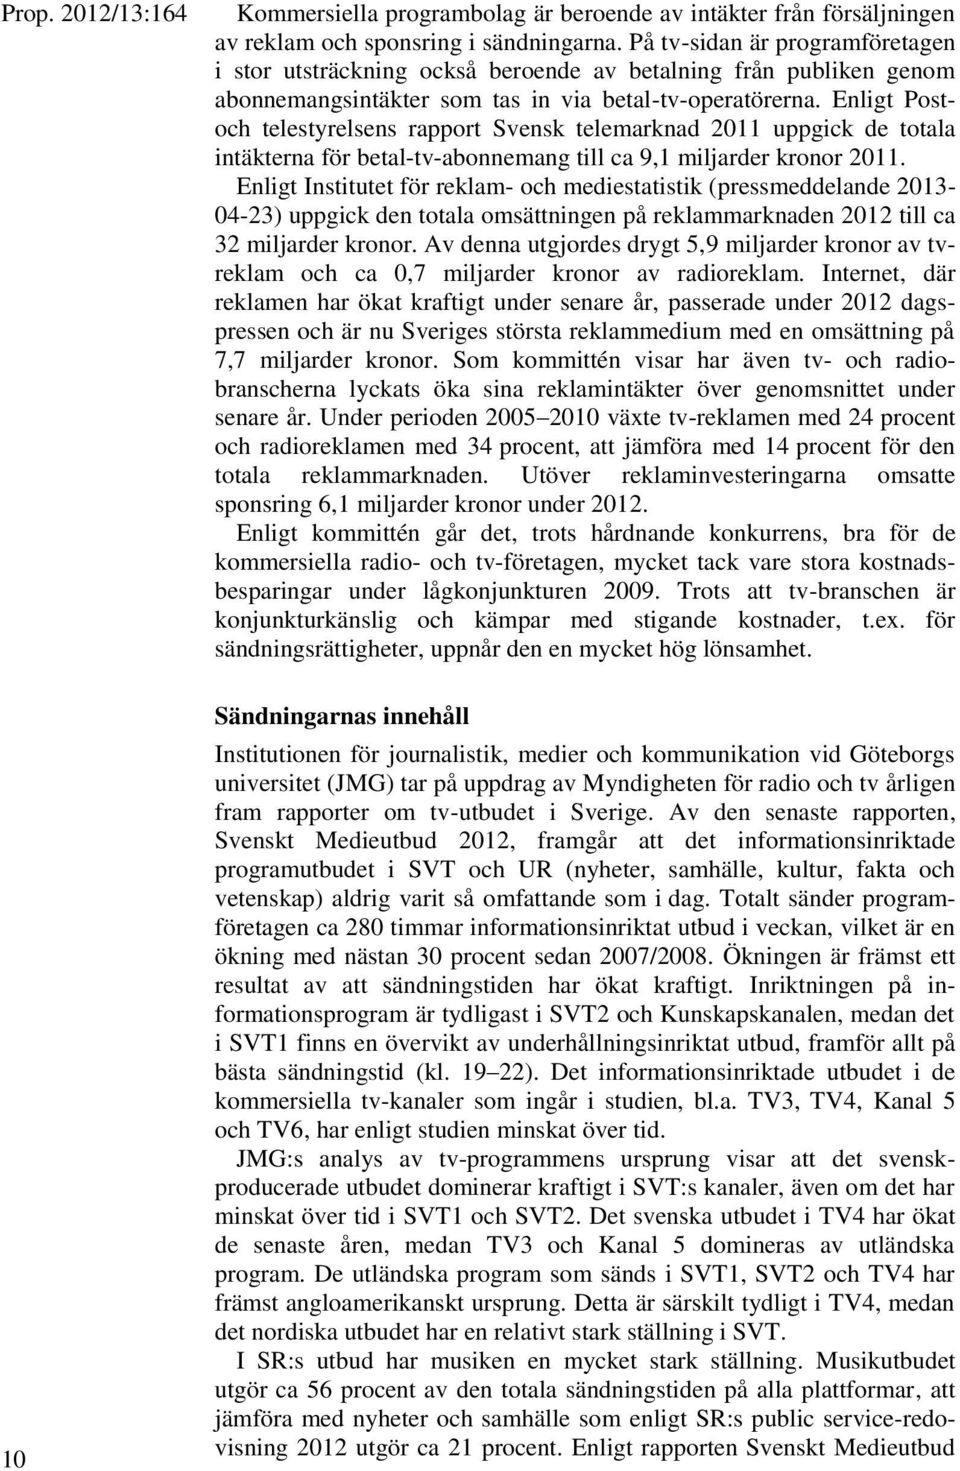 Enligt Postoch telestyrelsens rapport Svensk telemarknad 2011 uppgick de totala intäkterna för betal-tv-abonnemang till ca 9,1 miljarder kronor 2011.